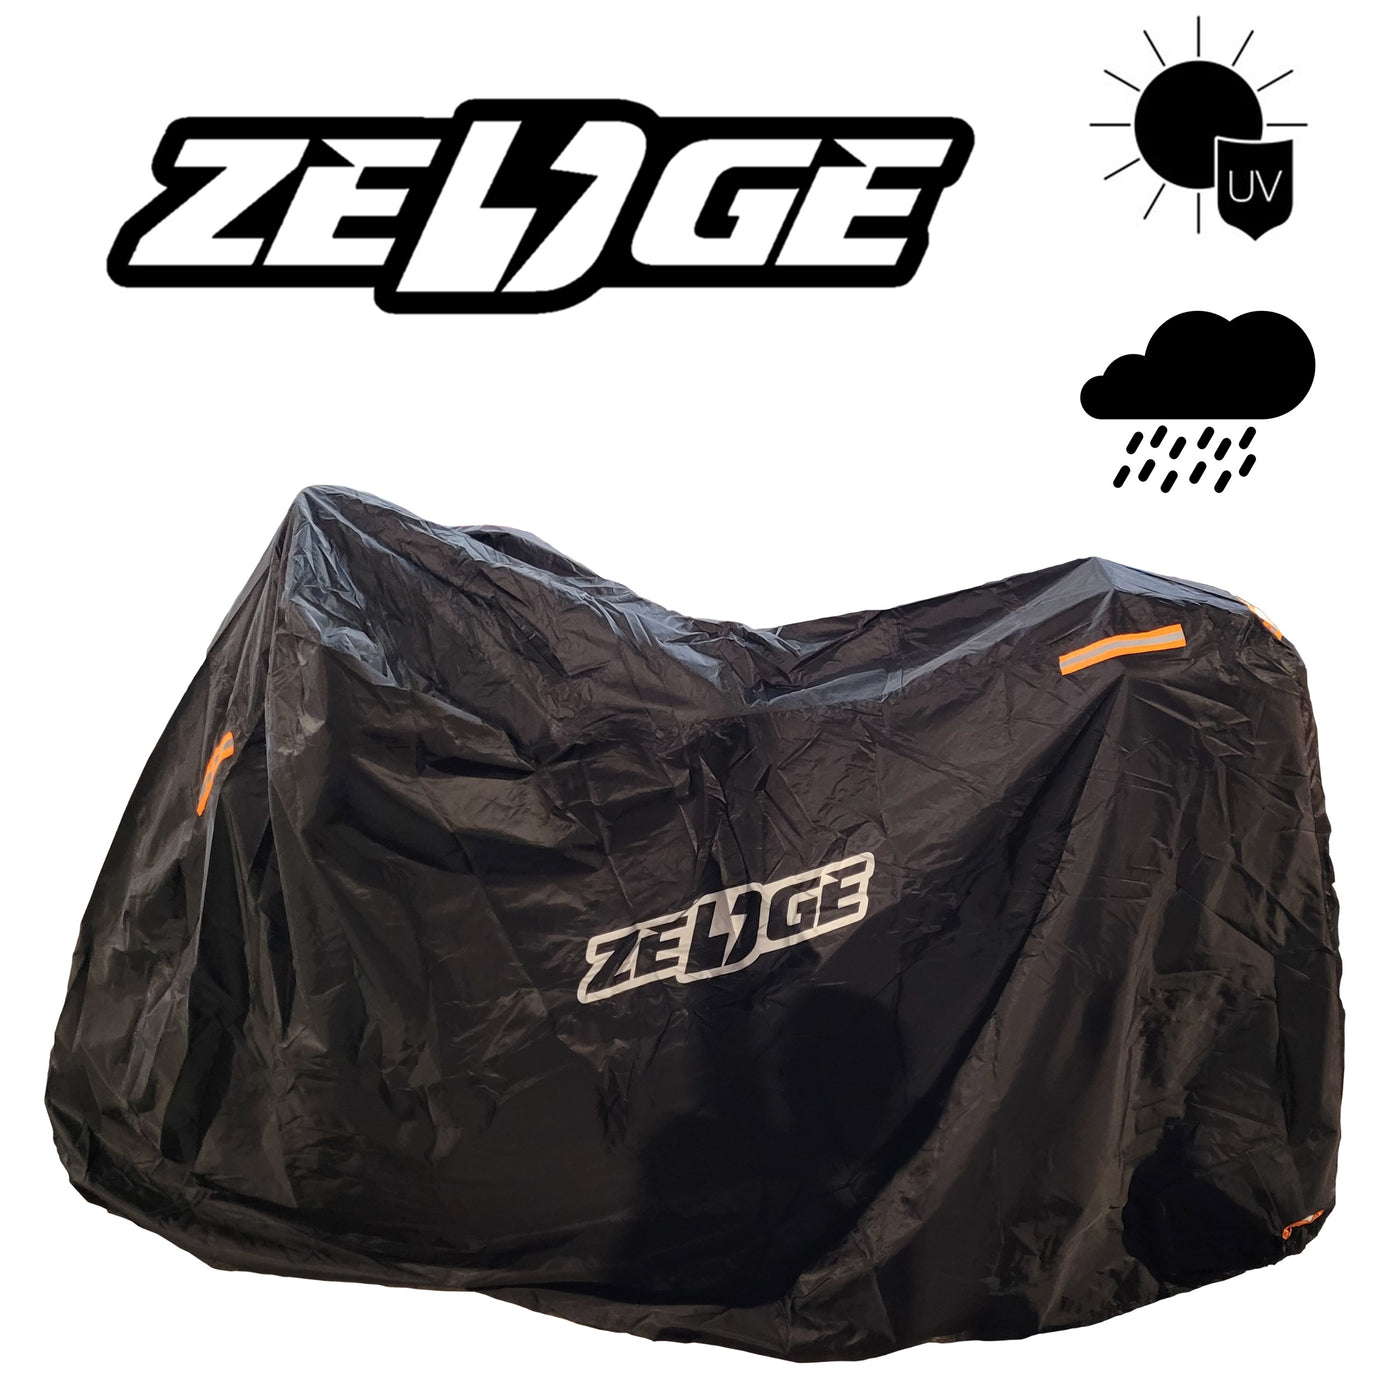 Zedge Bike Cover